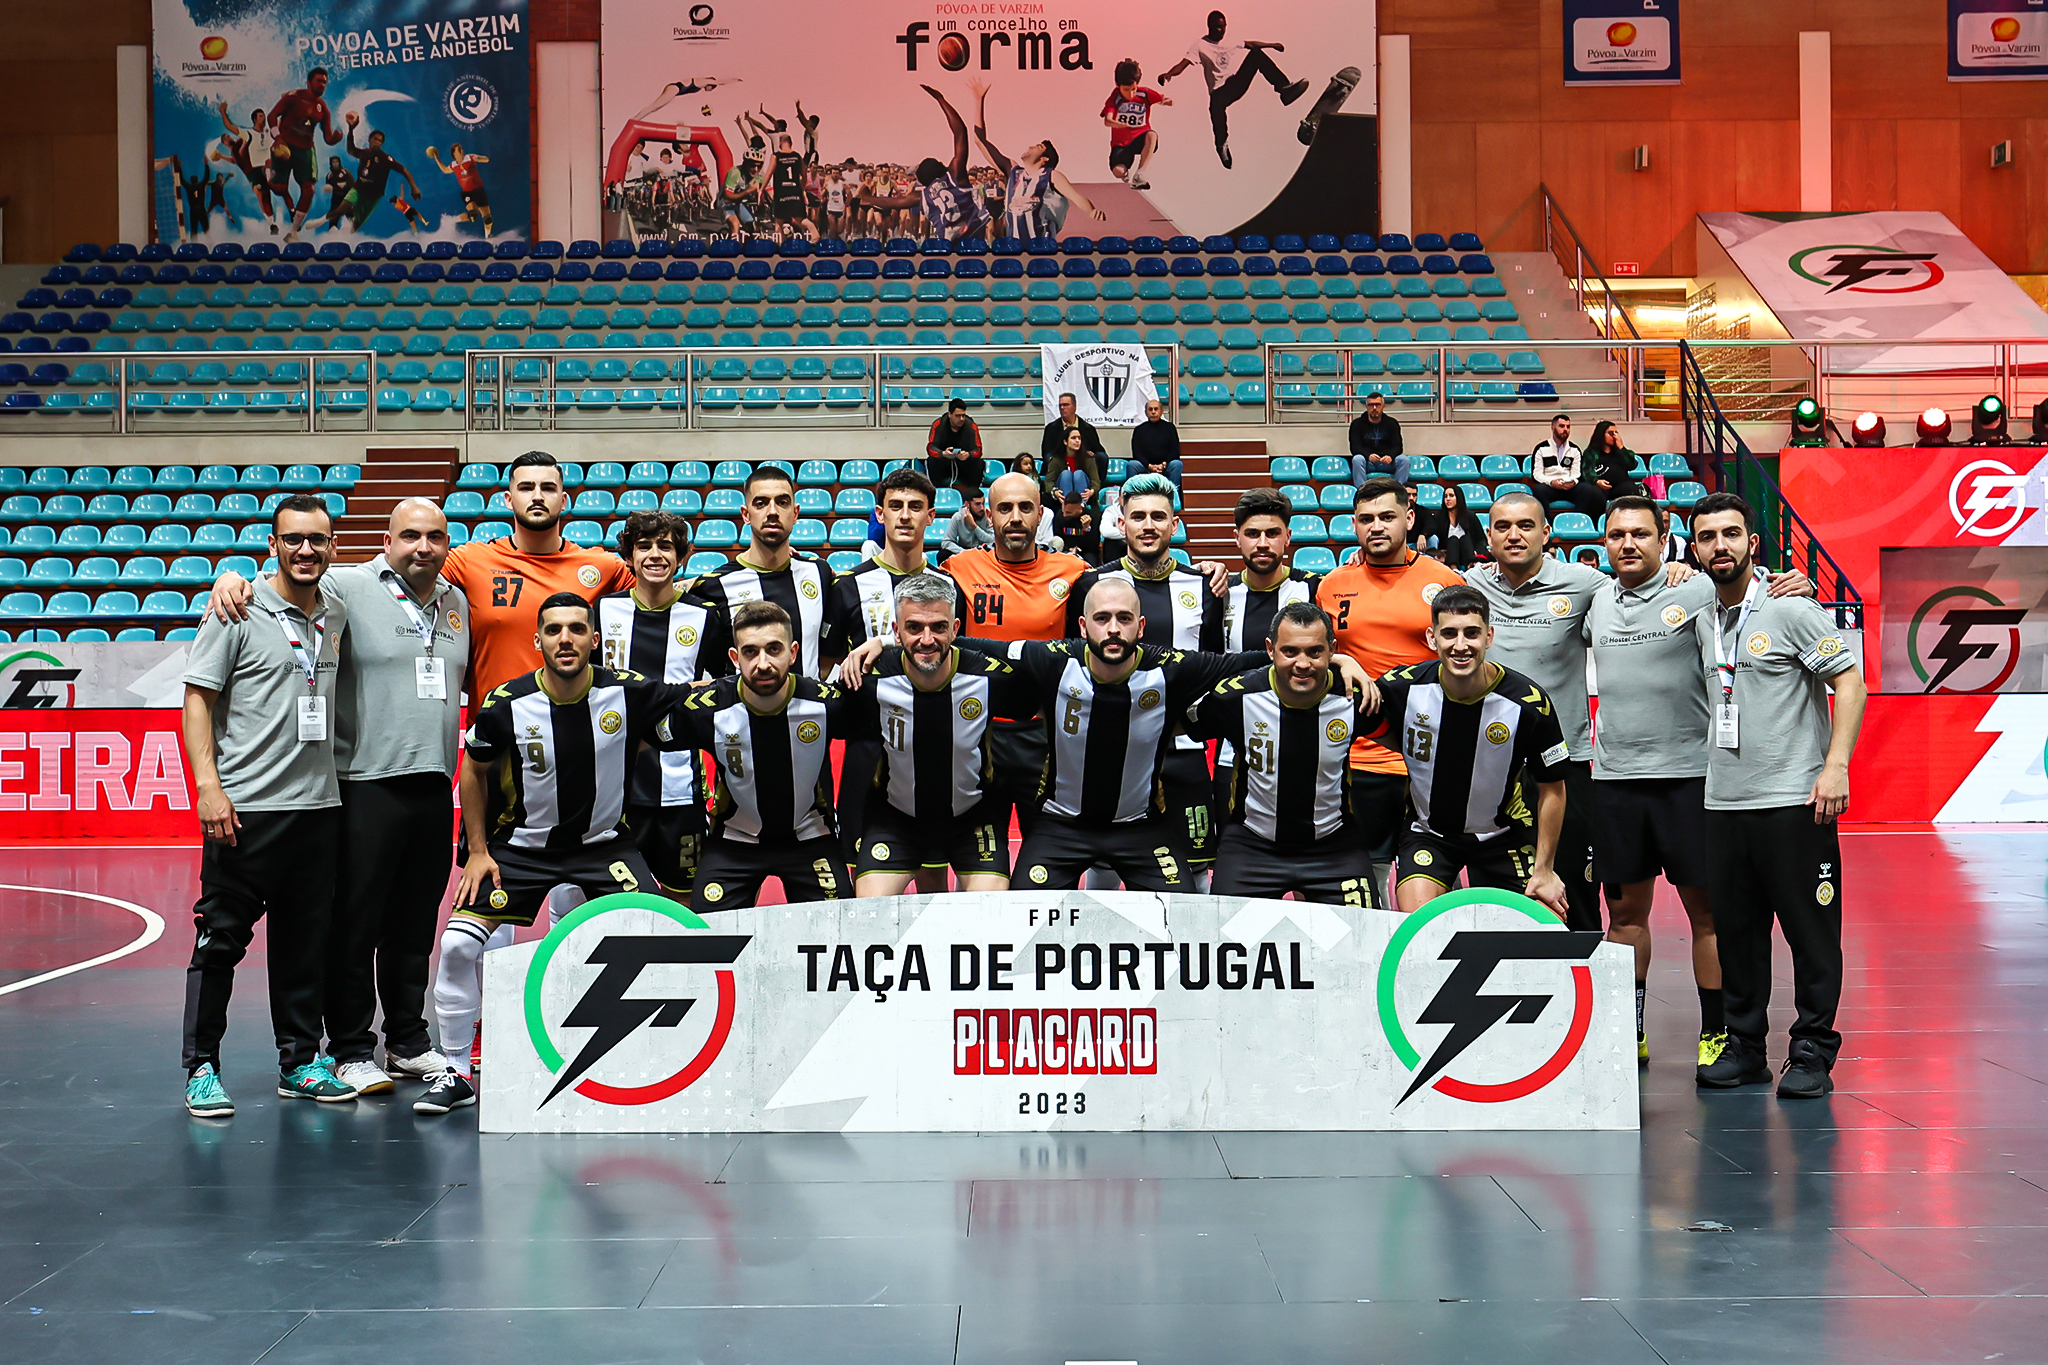 Taça de Portugal PLACARD - Futsal: alvinegros vencidos